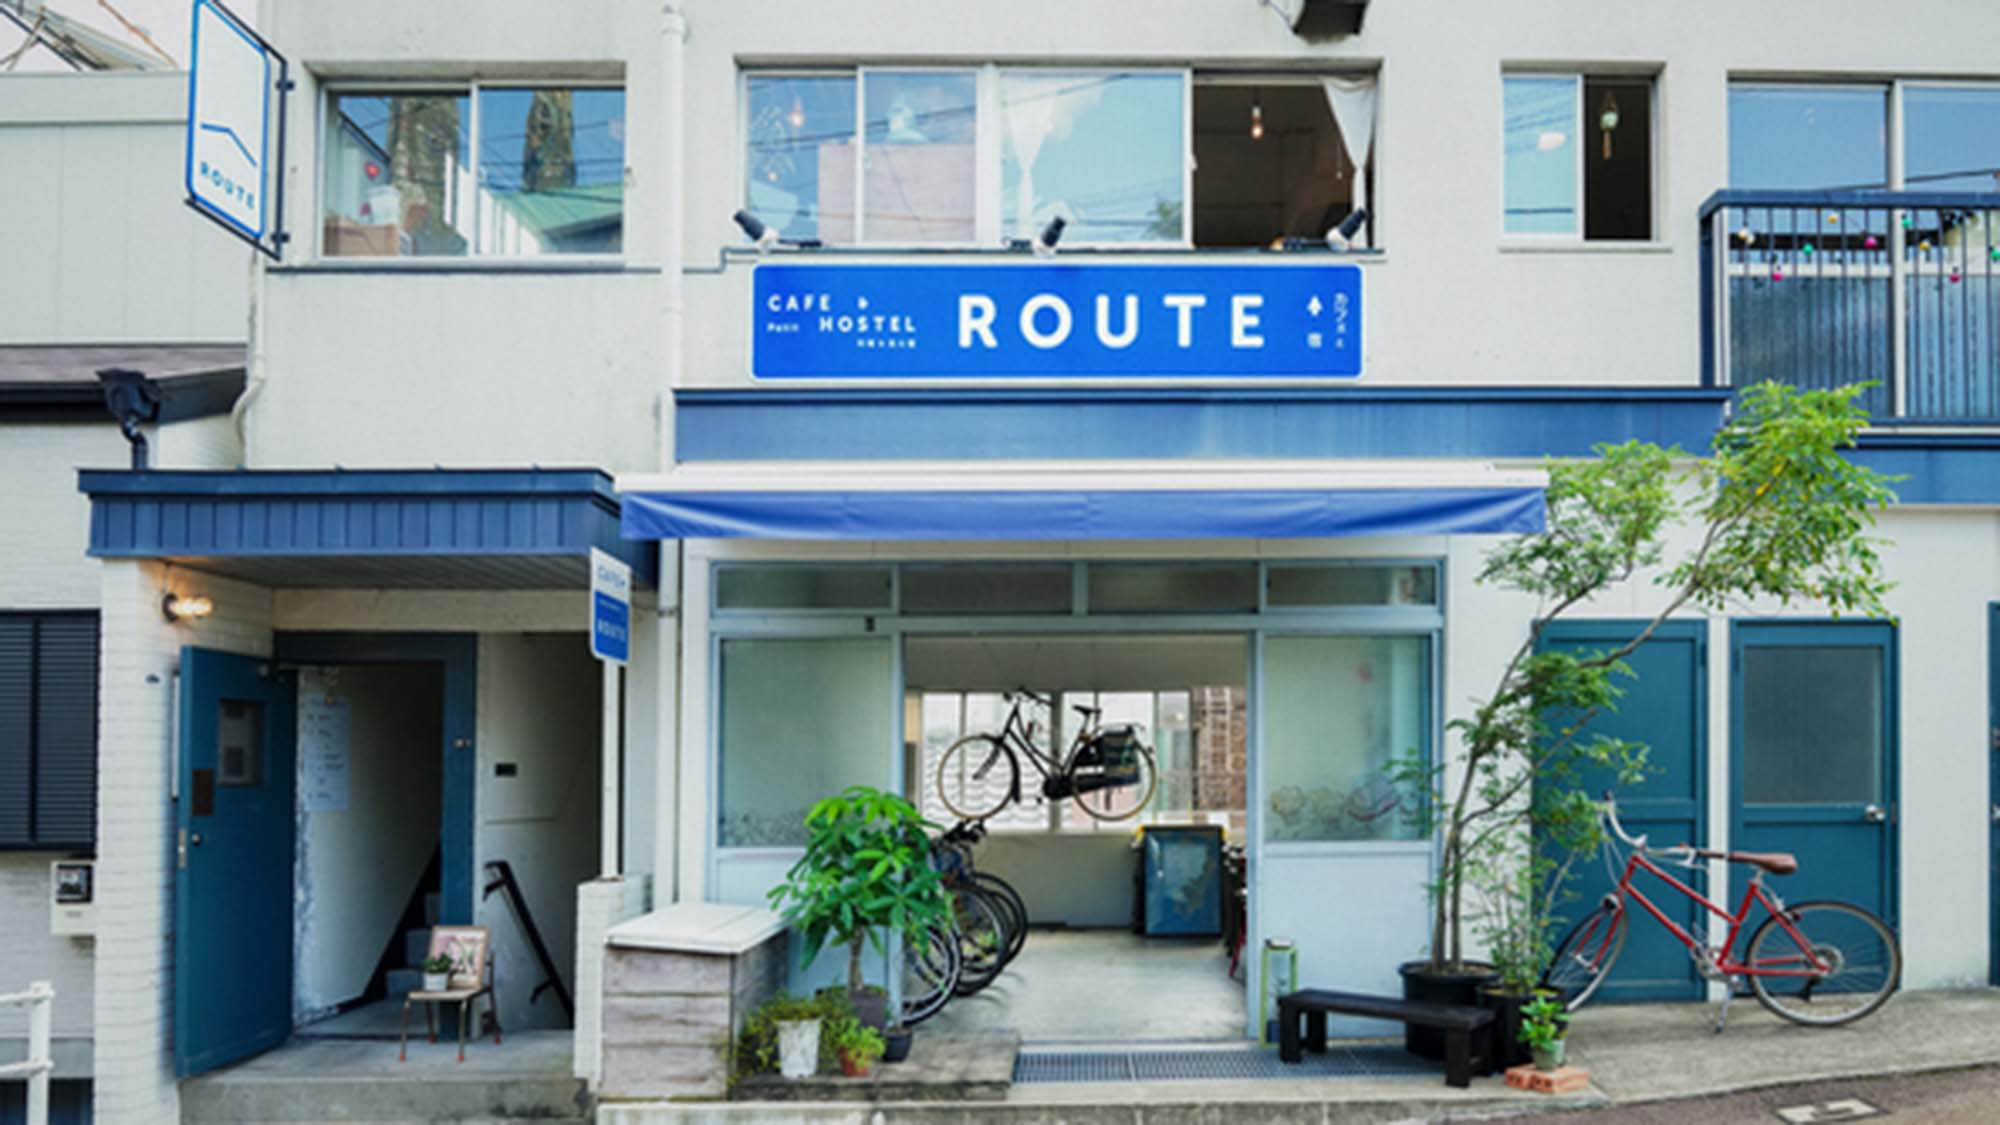 Cafe & Petit Hostel Route